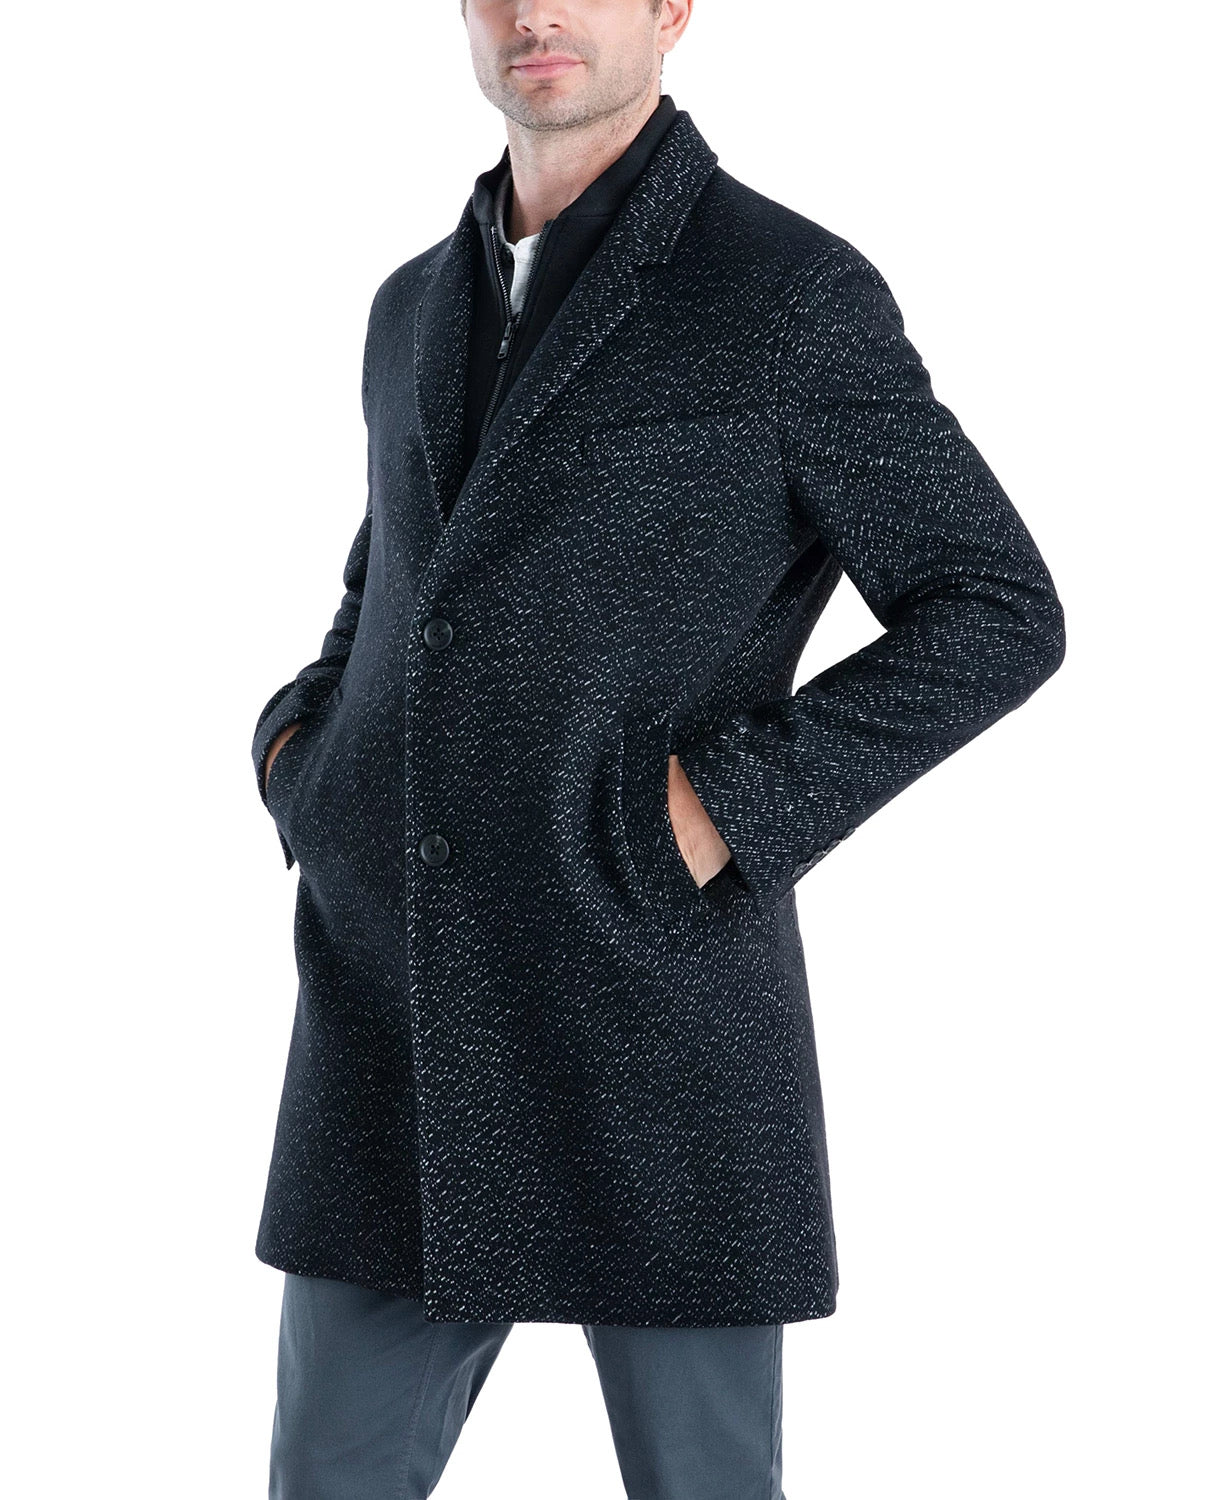 Michael Kors Men's Pike Slim Fit Top Coat 46R Black / White Overcoat